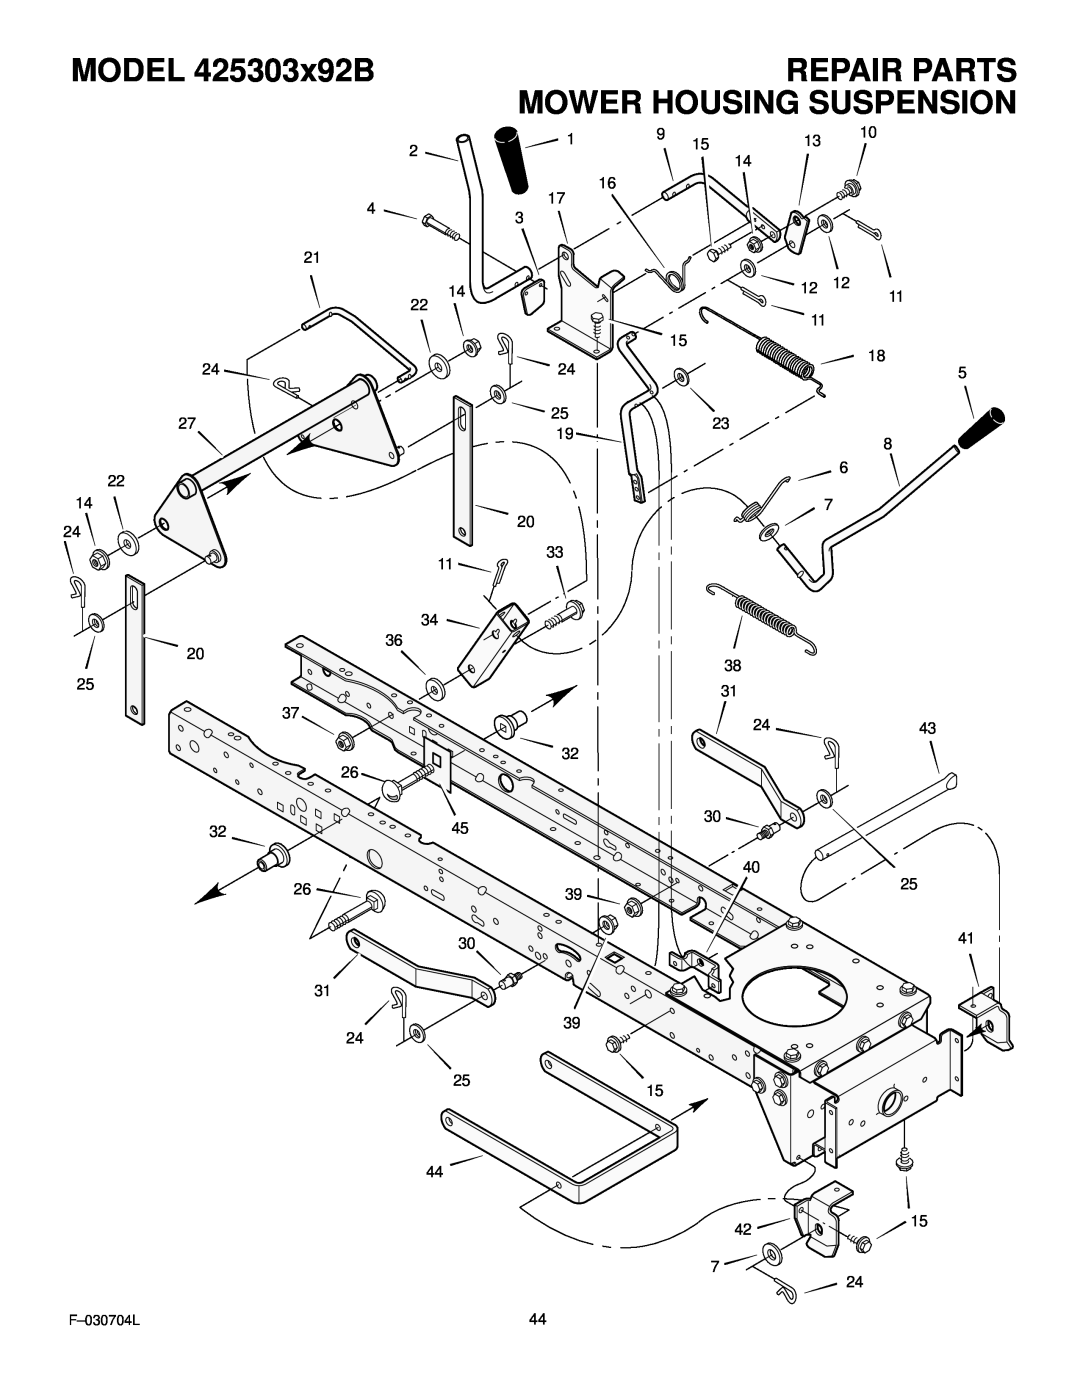 Murray manual Repair Parts Mower Housing Suspension, MODEL 425303x92B, F-030704L 